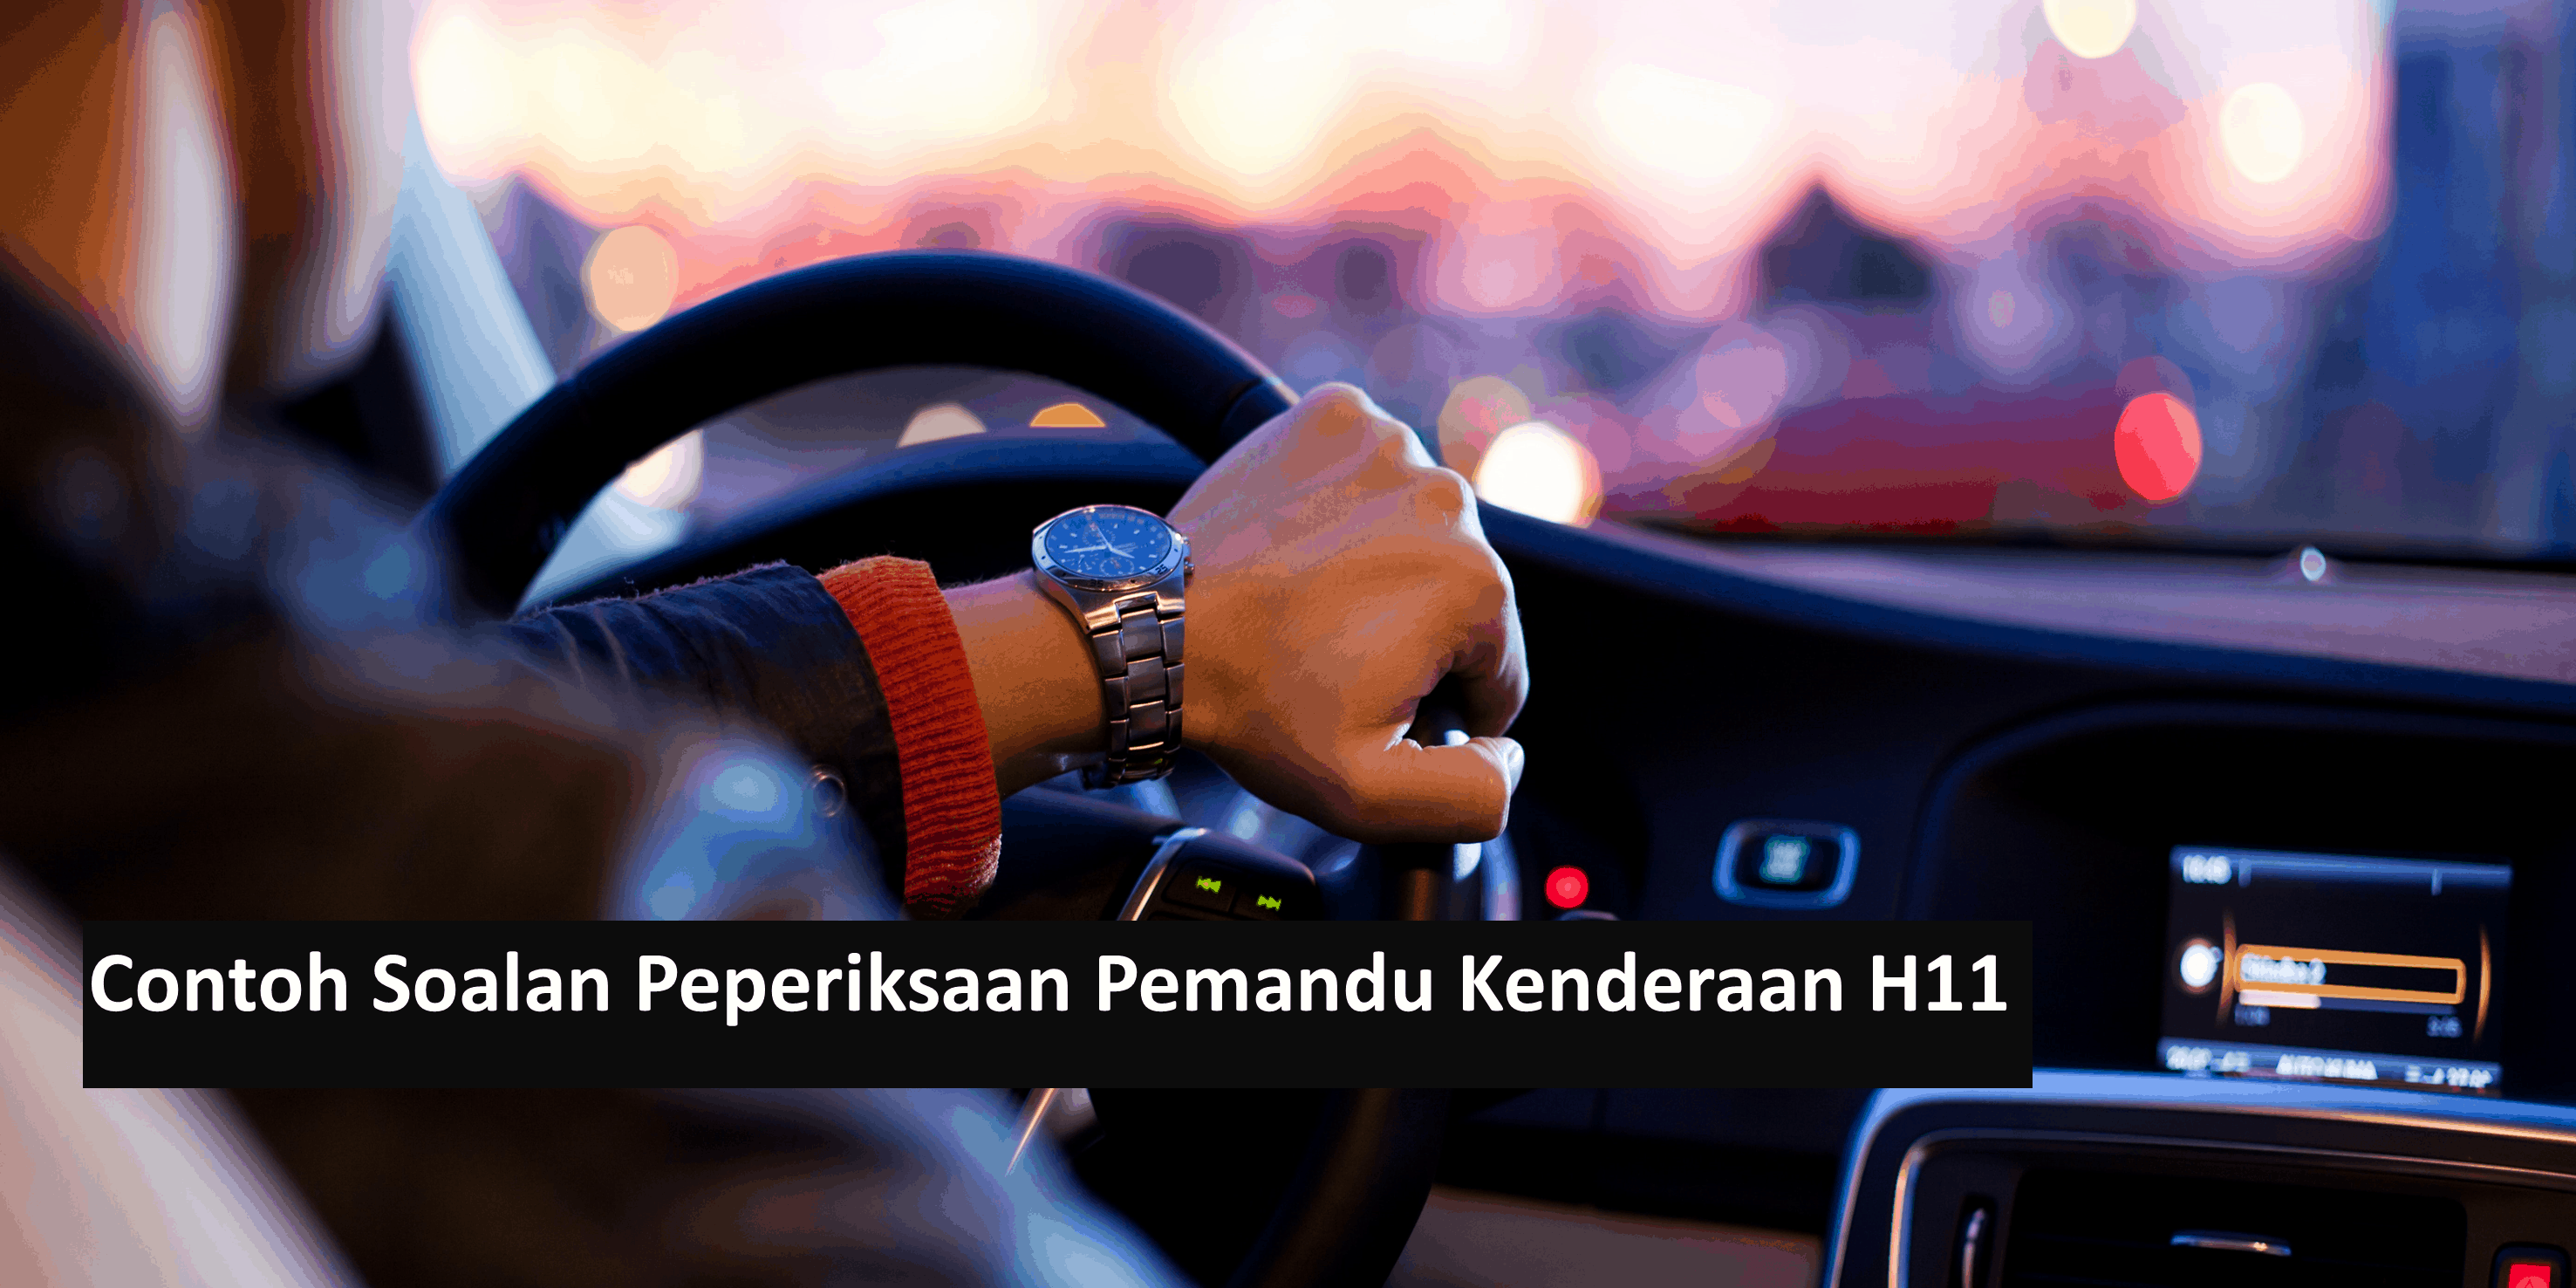 Contoh Soalan Peperiksaan Pemandu Kenderaan H11 - Kerjaya ...